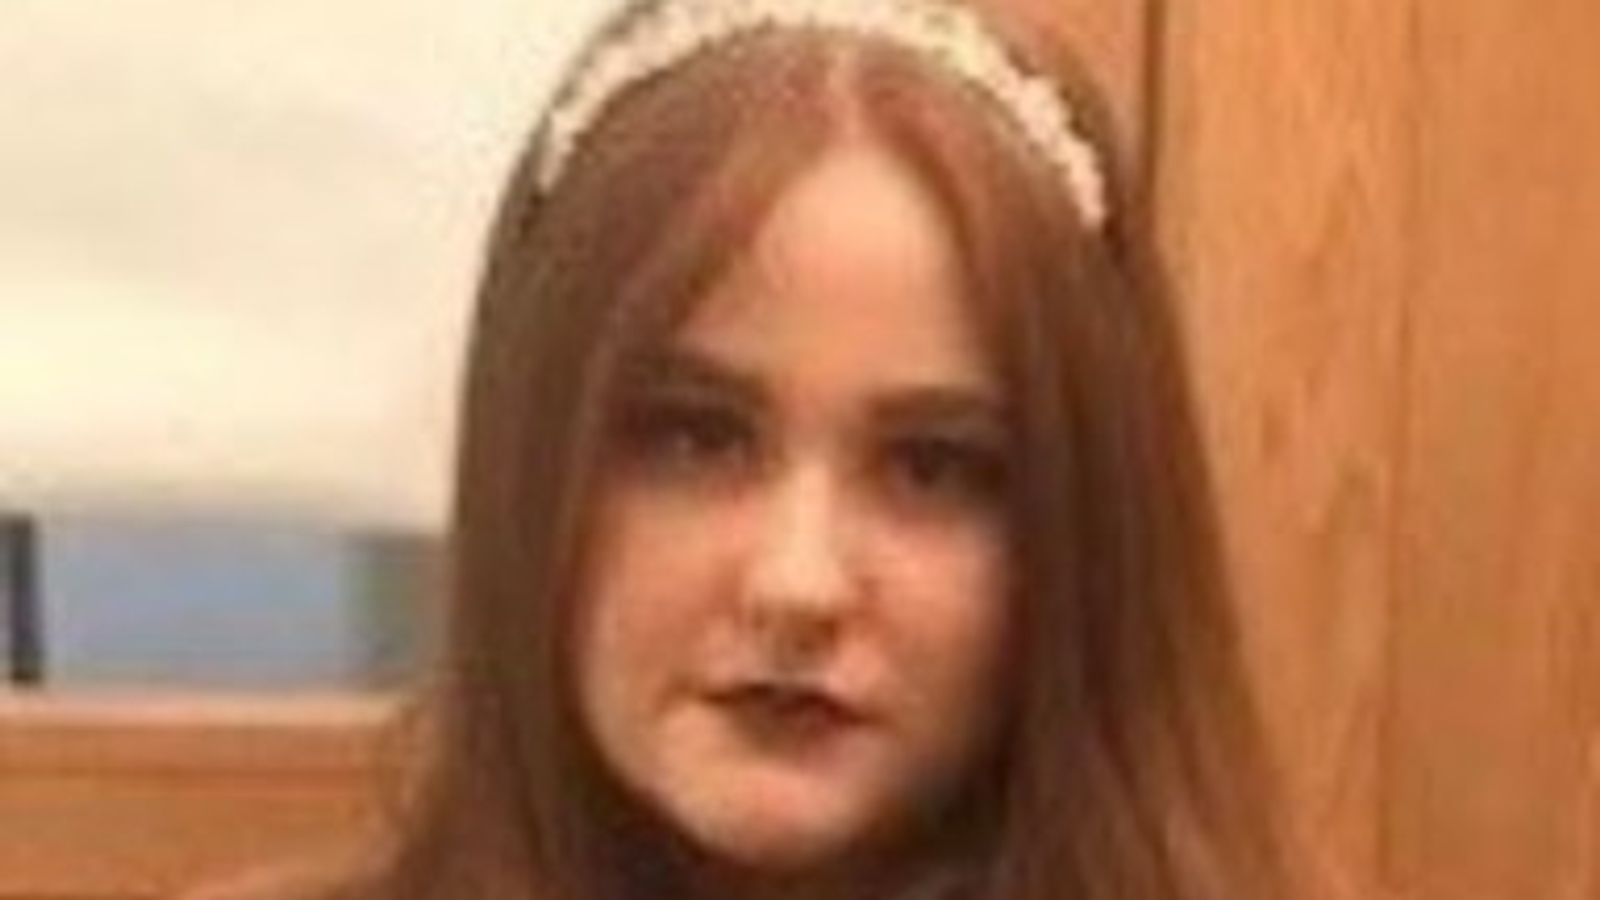 Pembunuhan Amber Gibson: Keluarga ‘hancur’ atas pembunuhan remaja saat polisi fokus pada saat-saat terakhir |  Berita Inggris